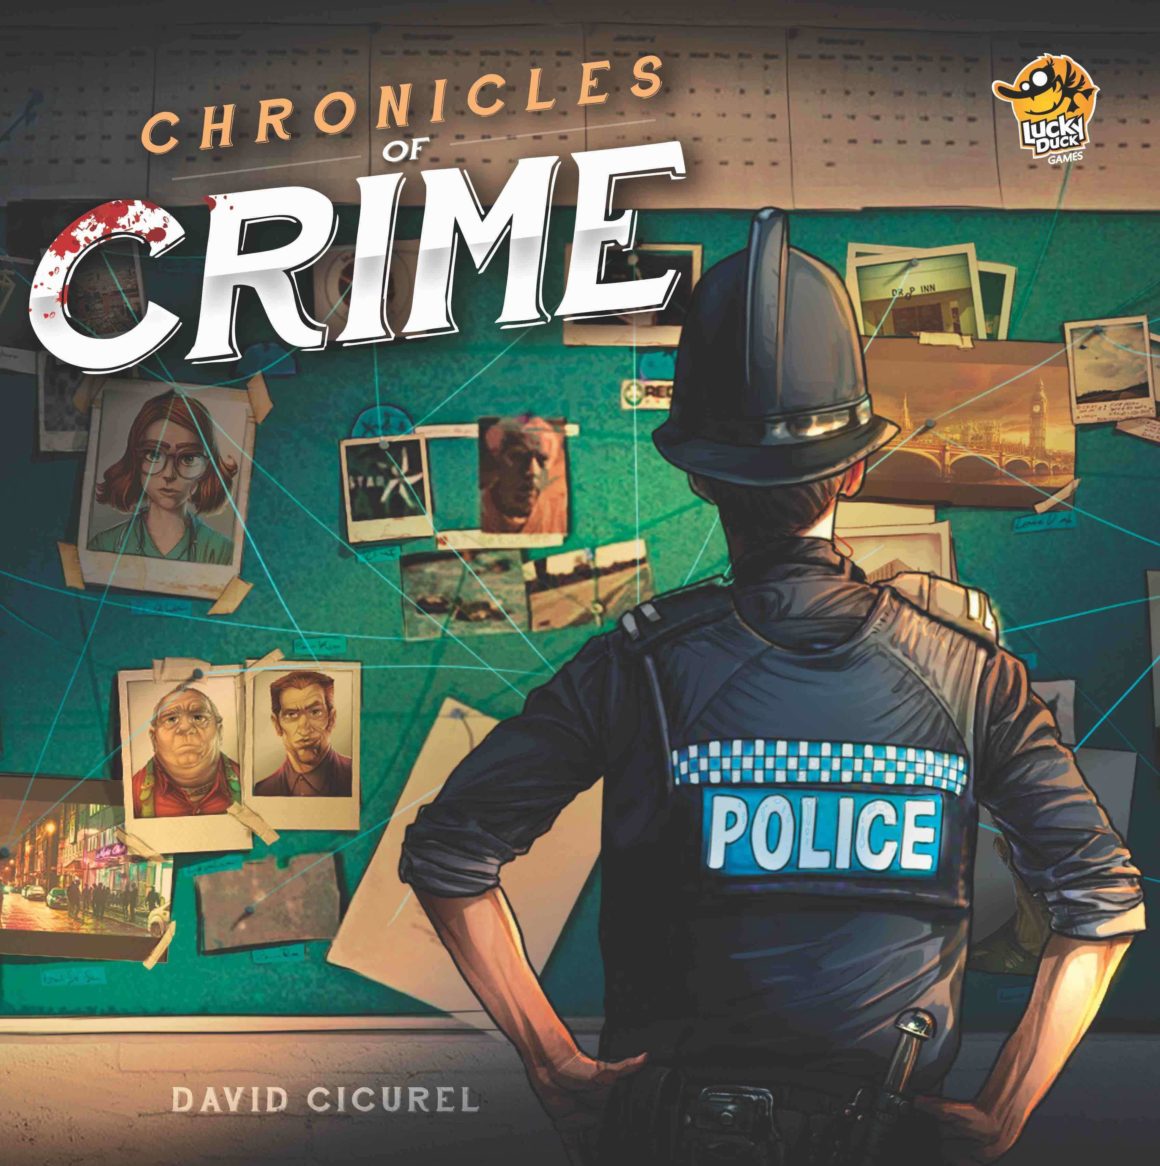 Il gioco da tavolo investigativo Chronicles of Crime